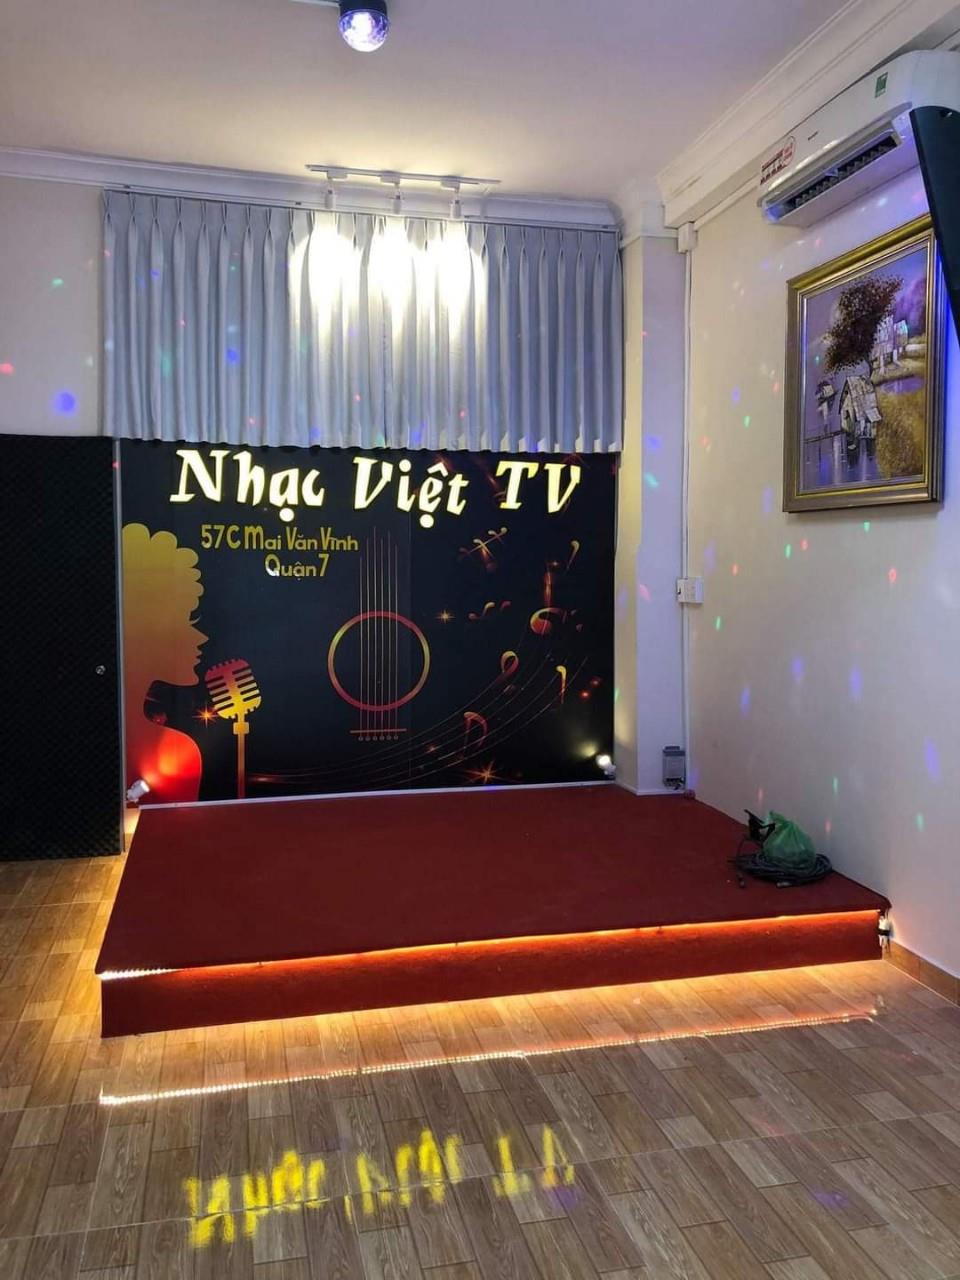 Sang quán Cà phê hát với nhau – Cà Phê Nhạc Việt TV đường Mai Văn Vĩnh Quận 7. Tel : 0939134907  – 0906318547 ( Chính chủ )1572598